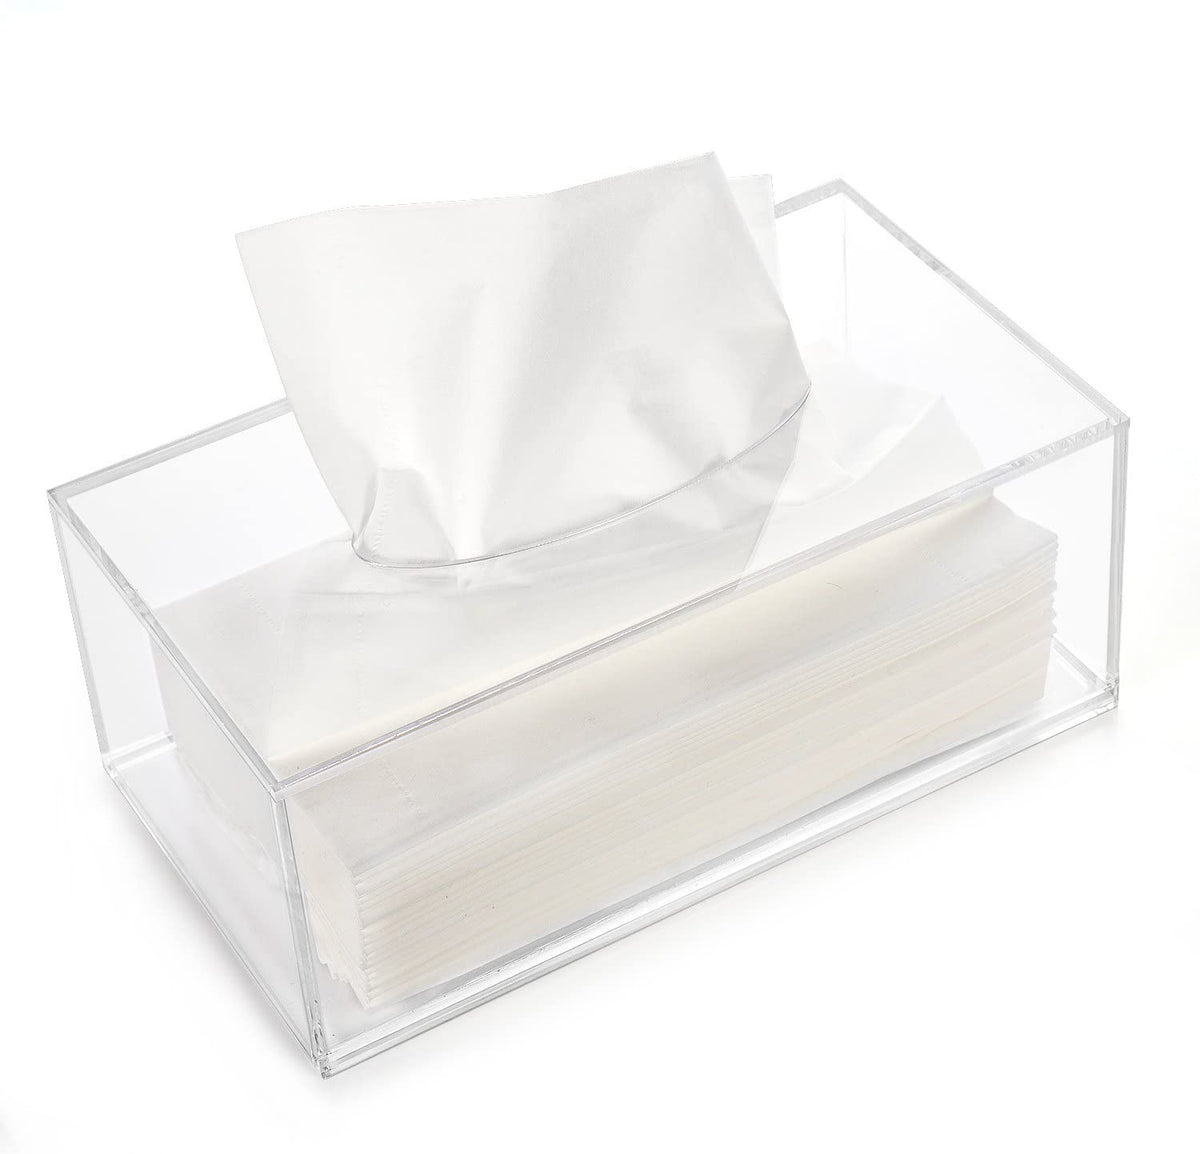 Acrylic Tissue Box Cover, Rectangular Facial Tissue Holder, Black